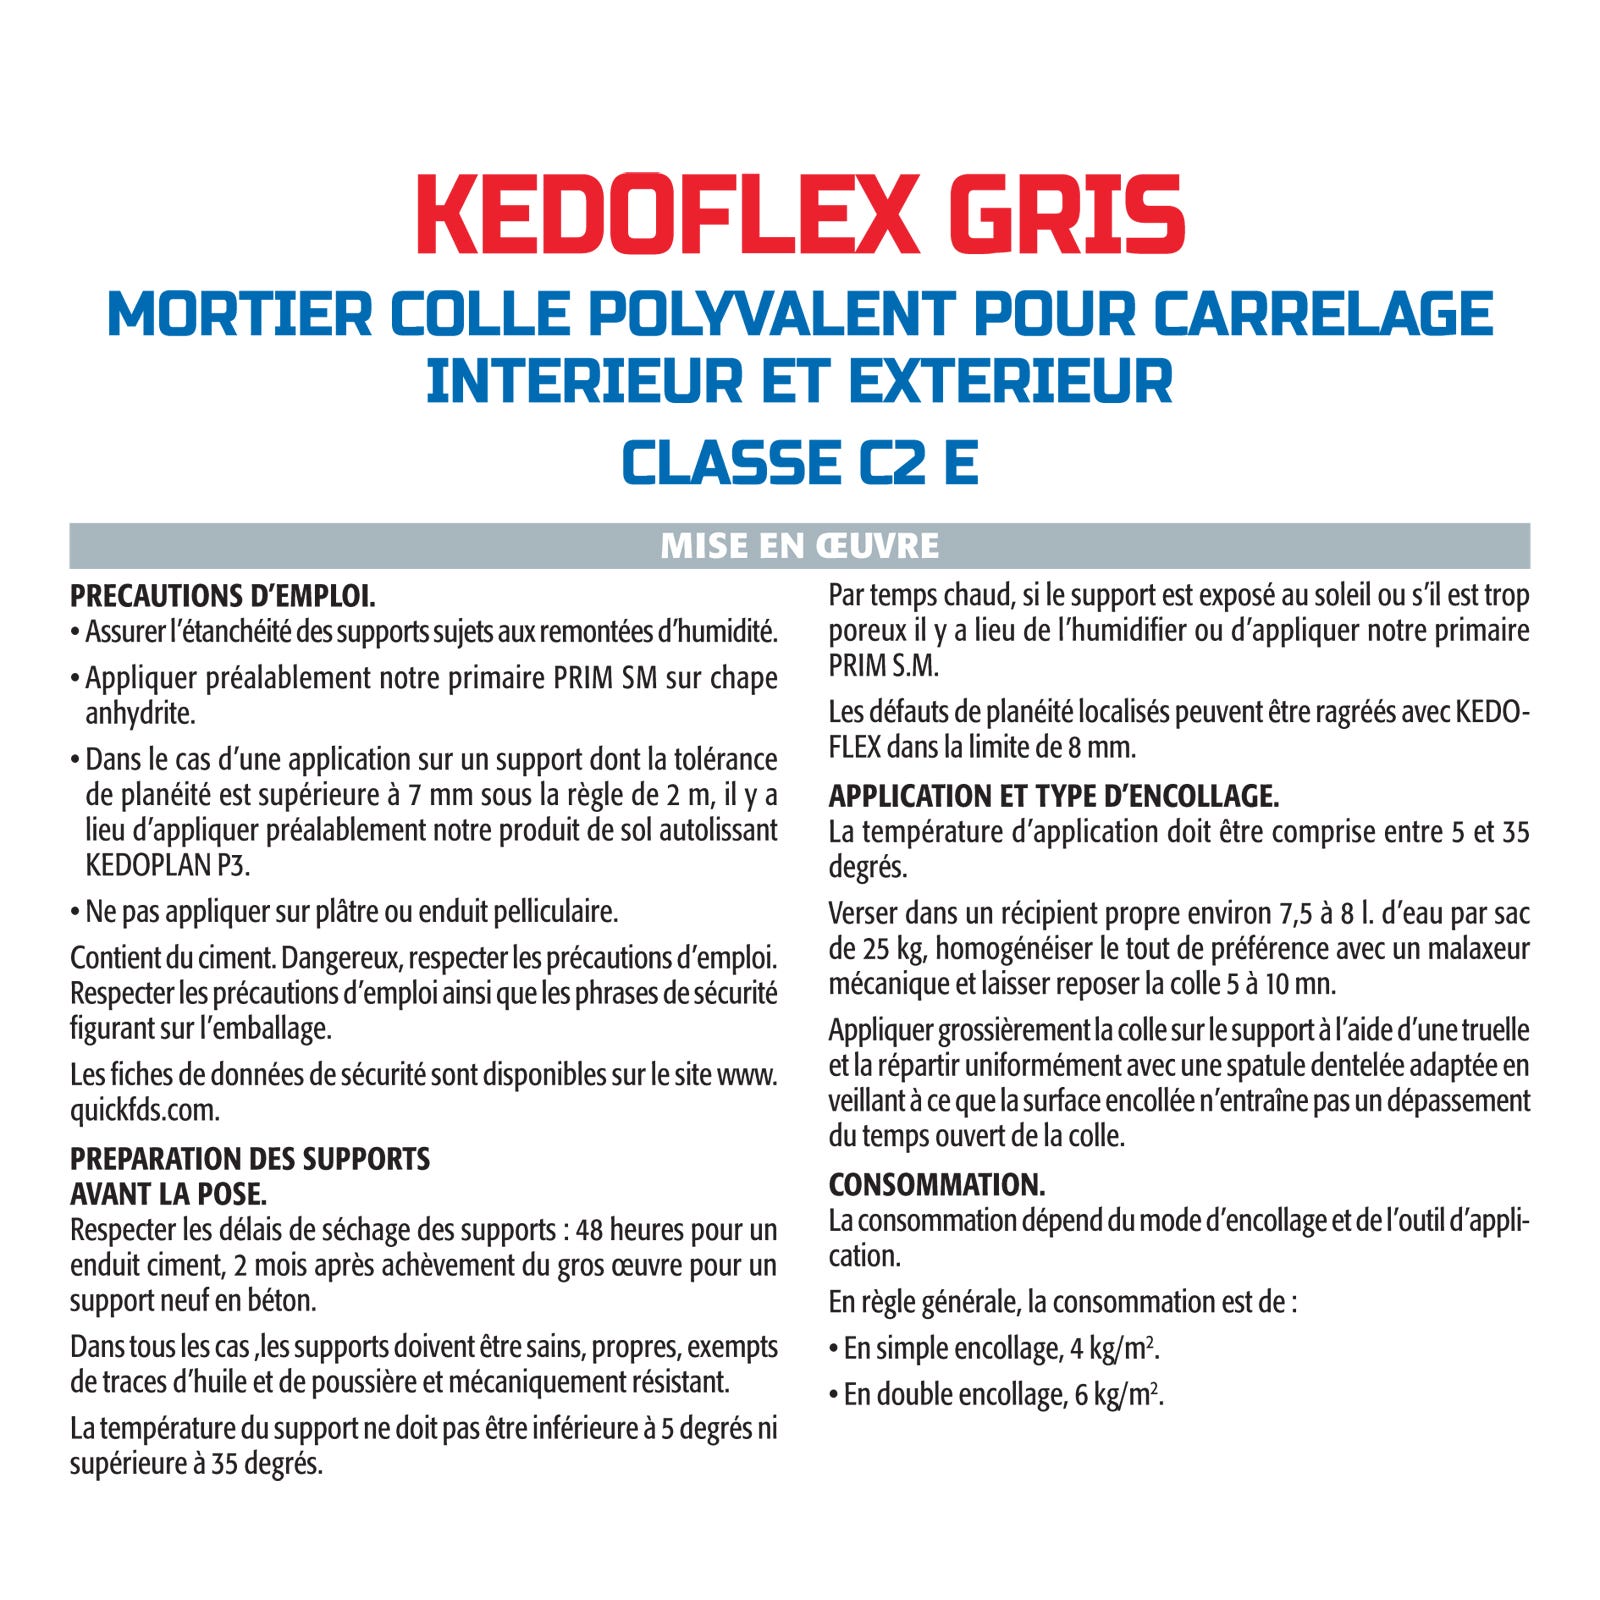 Mortier Colle Polyvalent pour Carrelage Kedoflex Gris Semin, Intérieur/Extérieur, sac de 25 kg, lot de 3 3